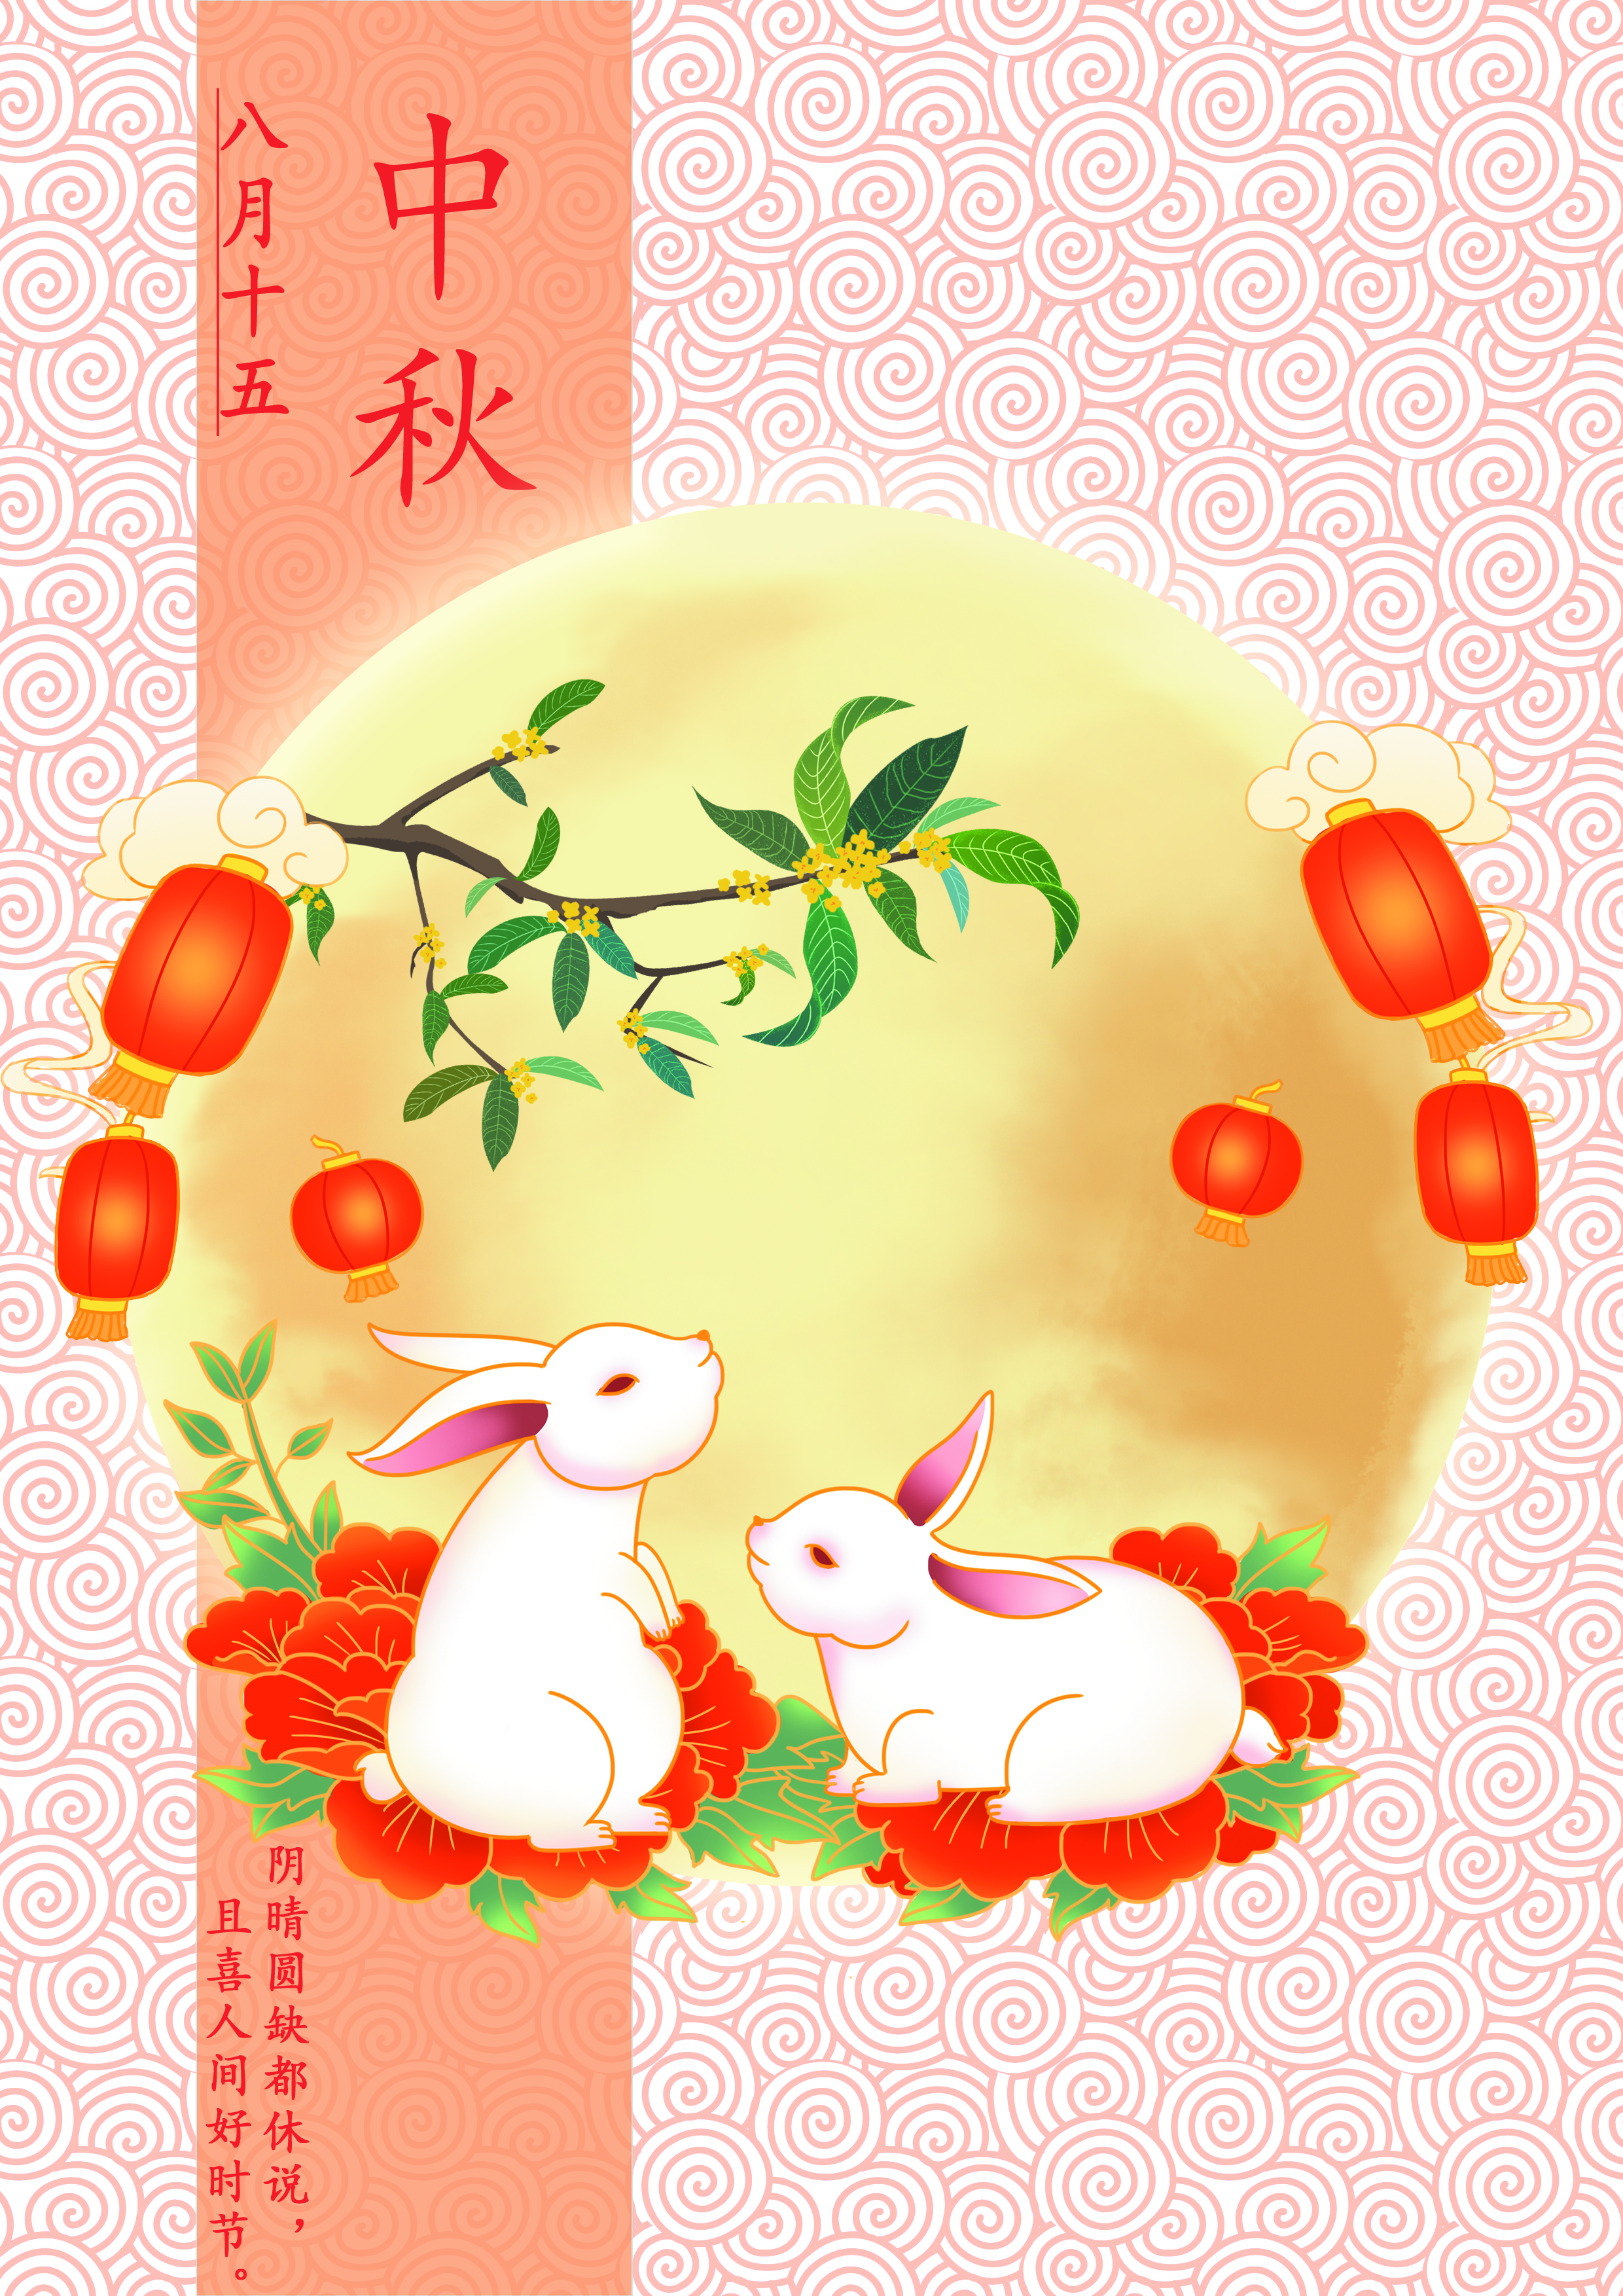 中国传统民俗节日插画